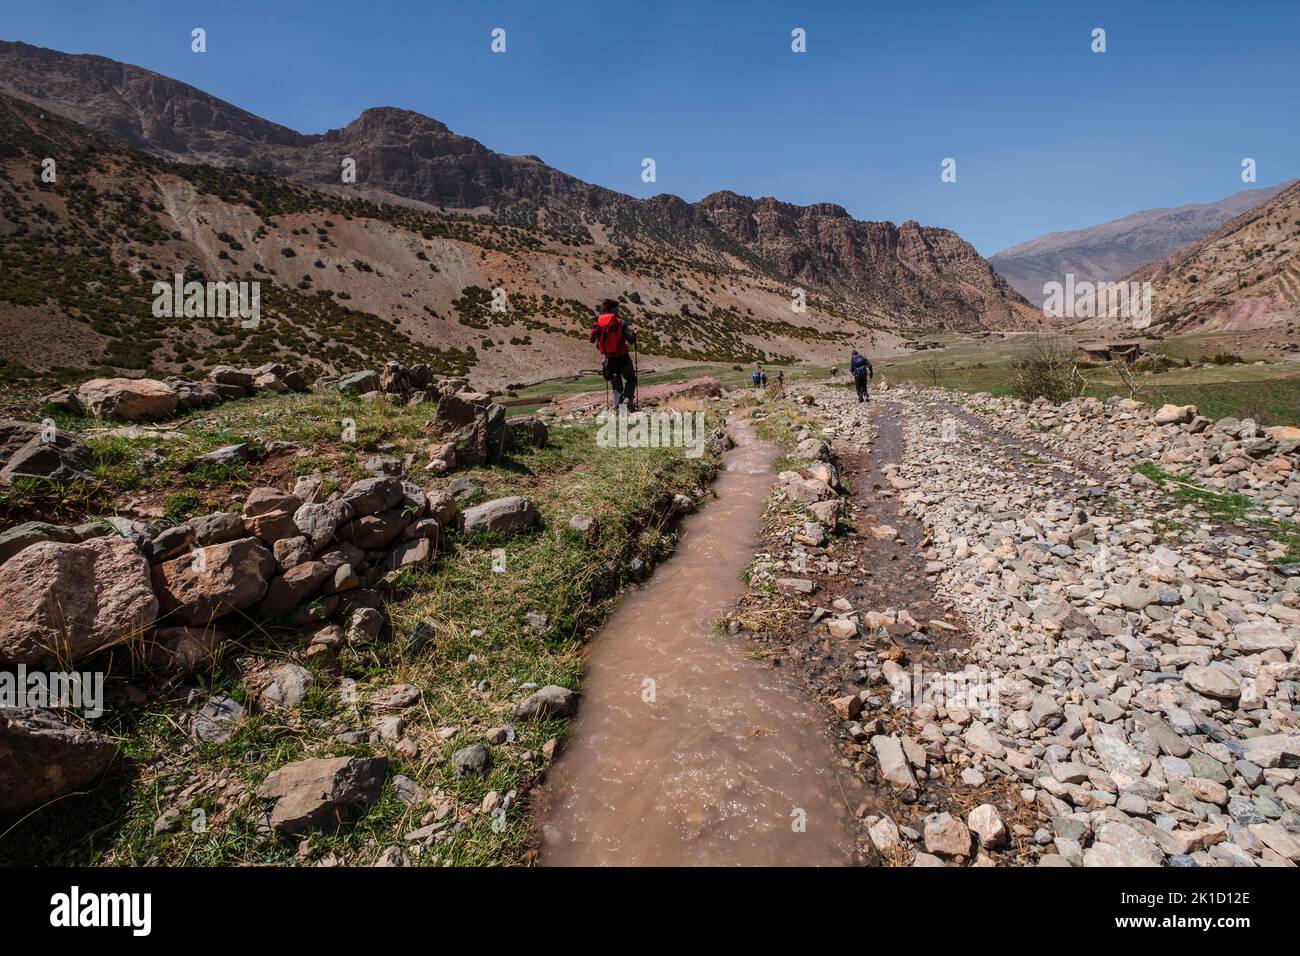 Randonneurs sur le sentier, randonnée MGoun, ait Said, chaîne de montagnes de l'Atlas, maroc, afrique. Banque D'Images